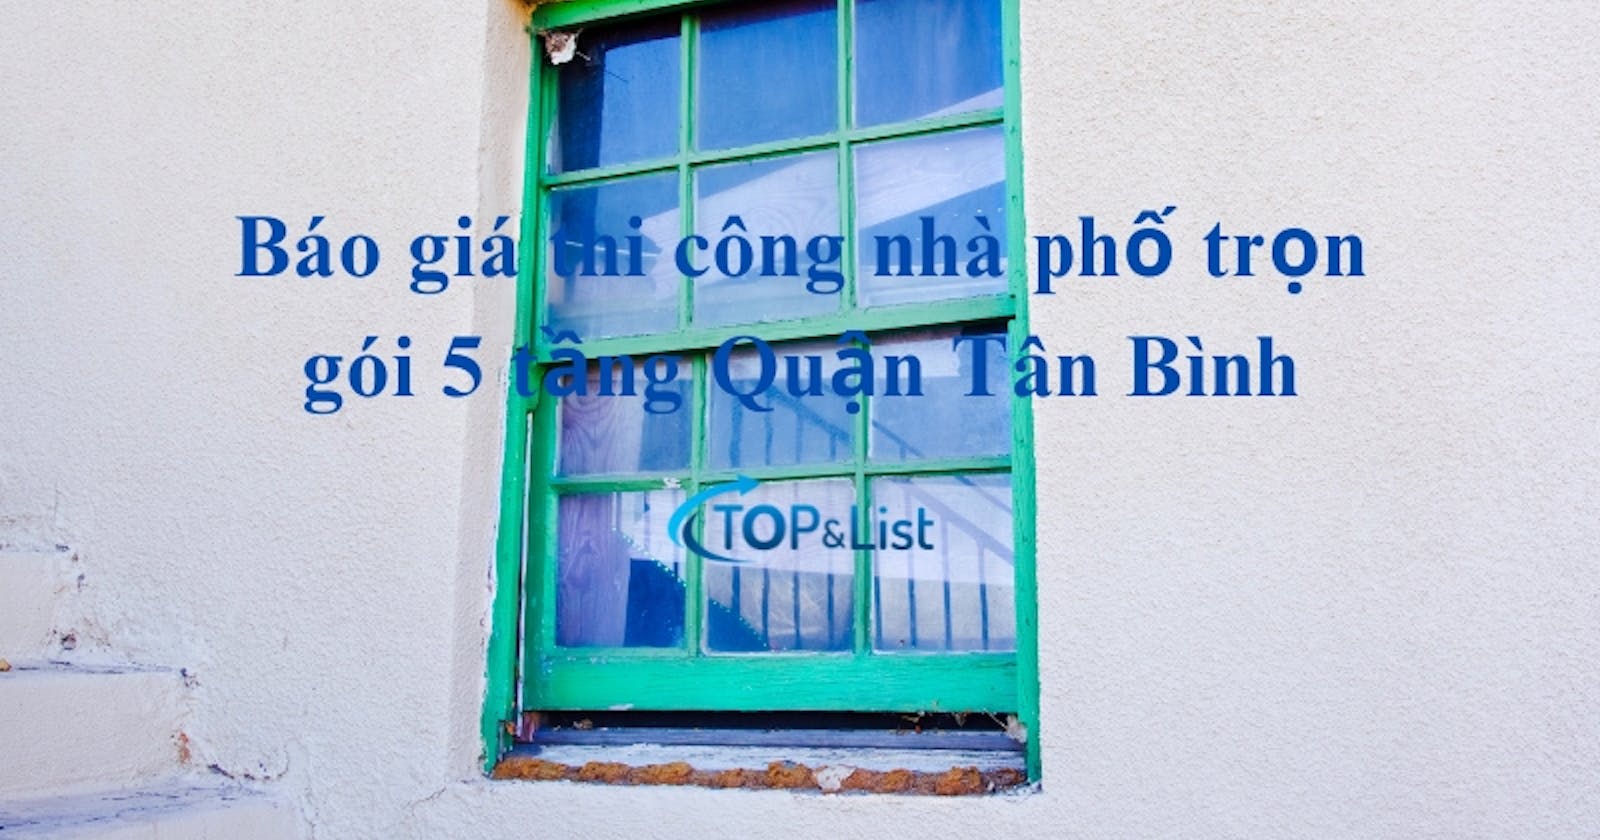 Báo giá thi công nhà phố trọn gói 5 tầng Quận Tân Bình